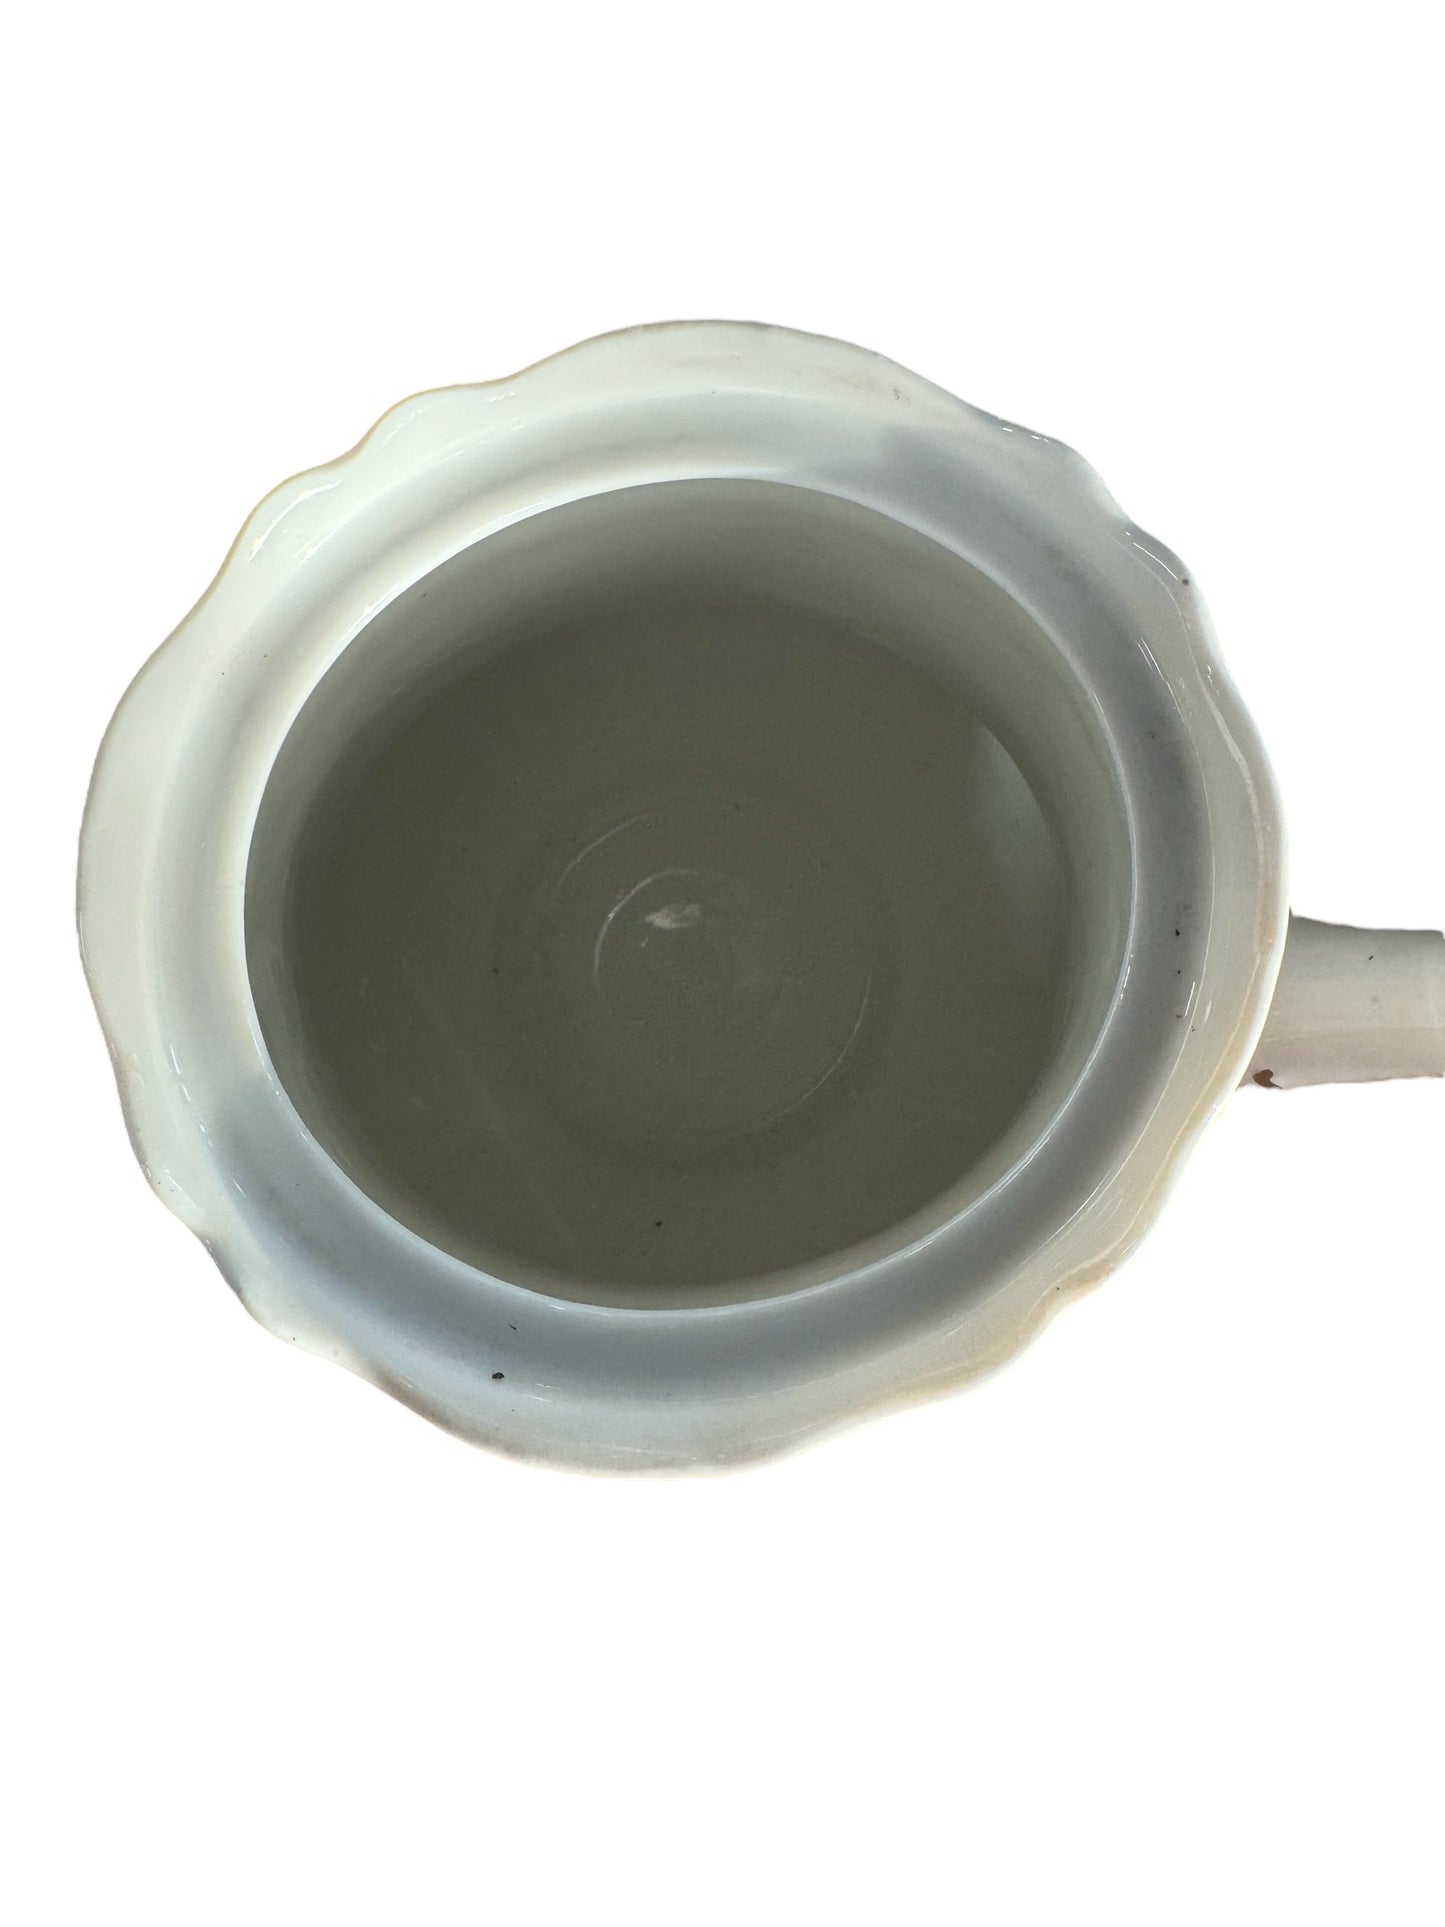 Theodore Haviland Limoges France Large Tea Pot (Trivet made in Germany)